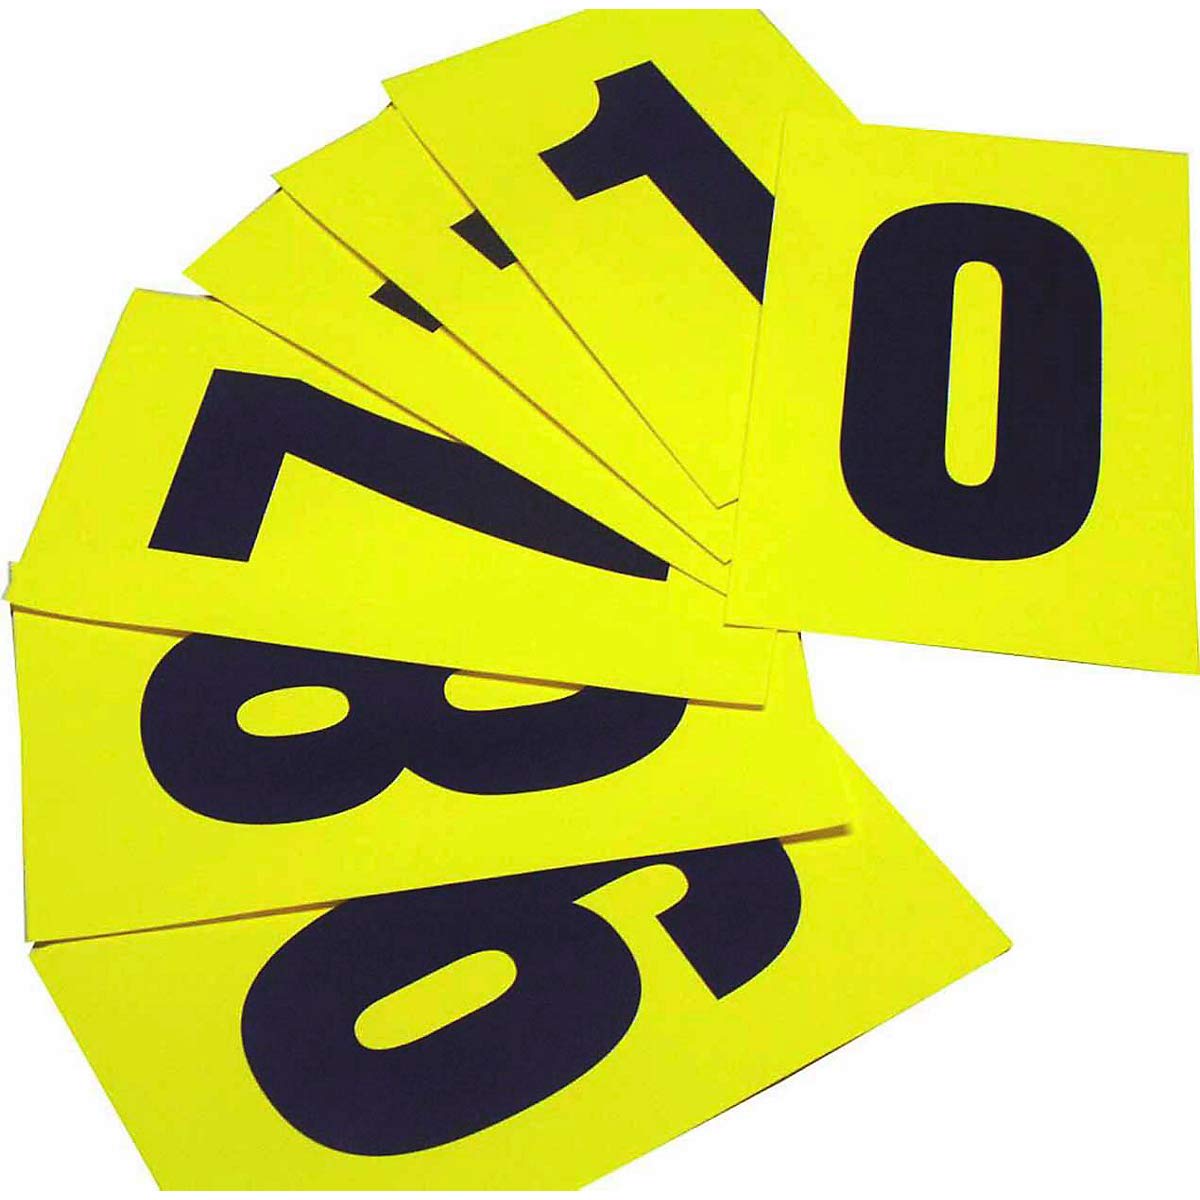 Numeri adesivi da 0 a 9 - 230 x 140 mm - 1 et/fg - 10 fogli - nero/giallo - Beaverswood - conf. 10 etichette